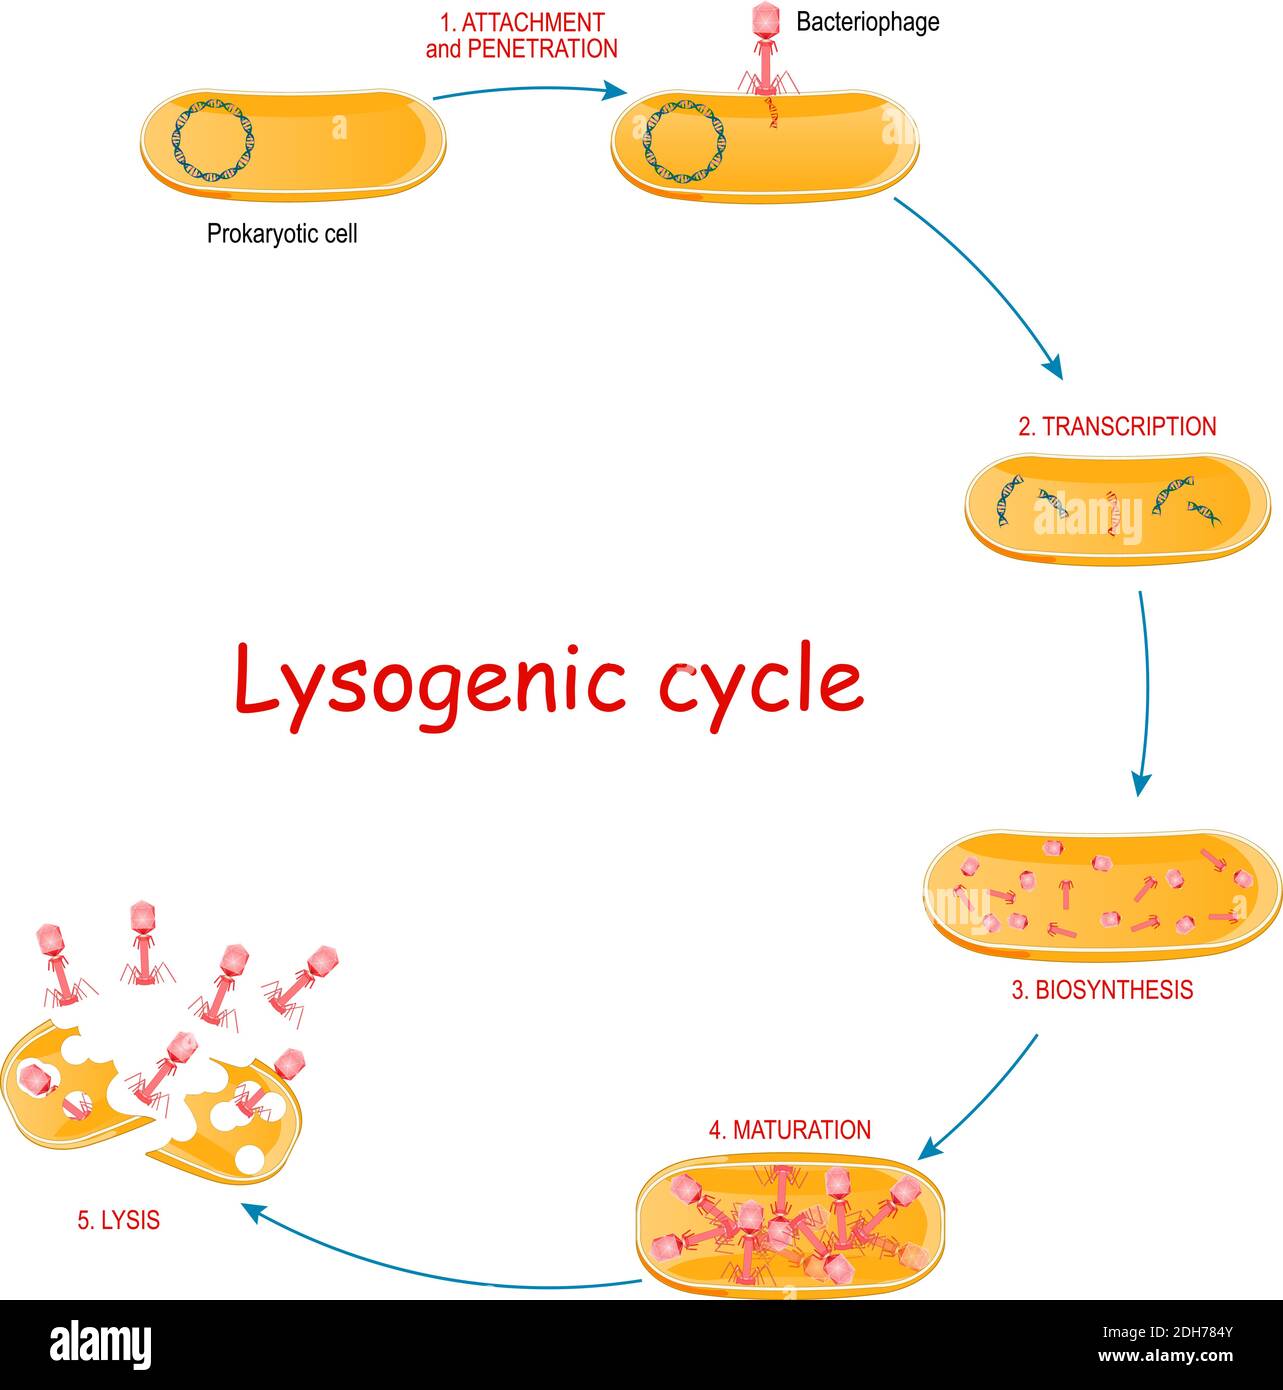 Cycle lytique avec bactéries et bactériophage. Cycles de reproduction virale qui entraîne la destruction de la cellule infectée. Les étapes de lytique Illustration de Vecteur